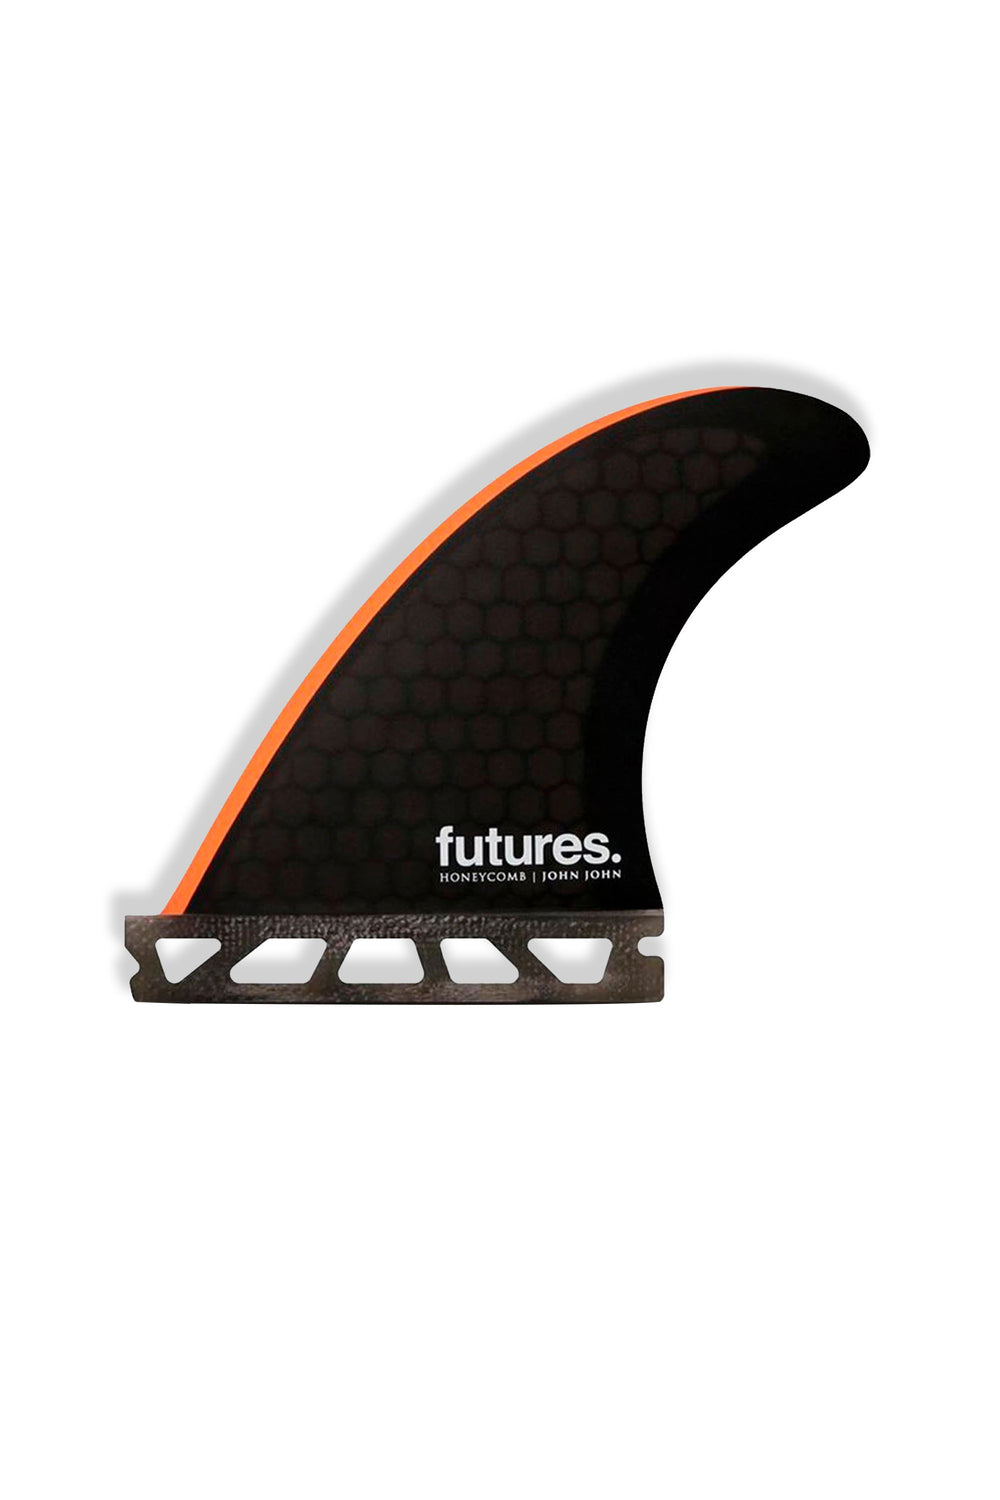 pukas-surf-shop-futures-fins-John-John-Florence-Honeycomb-XS